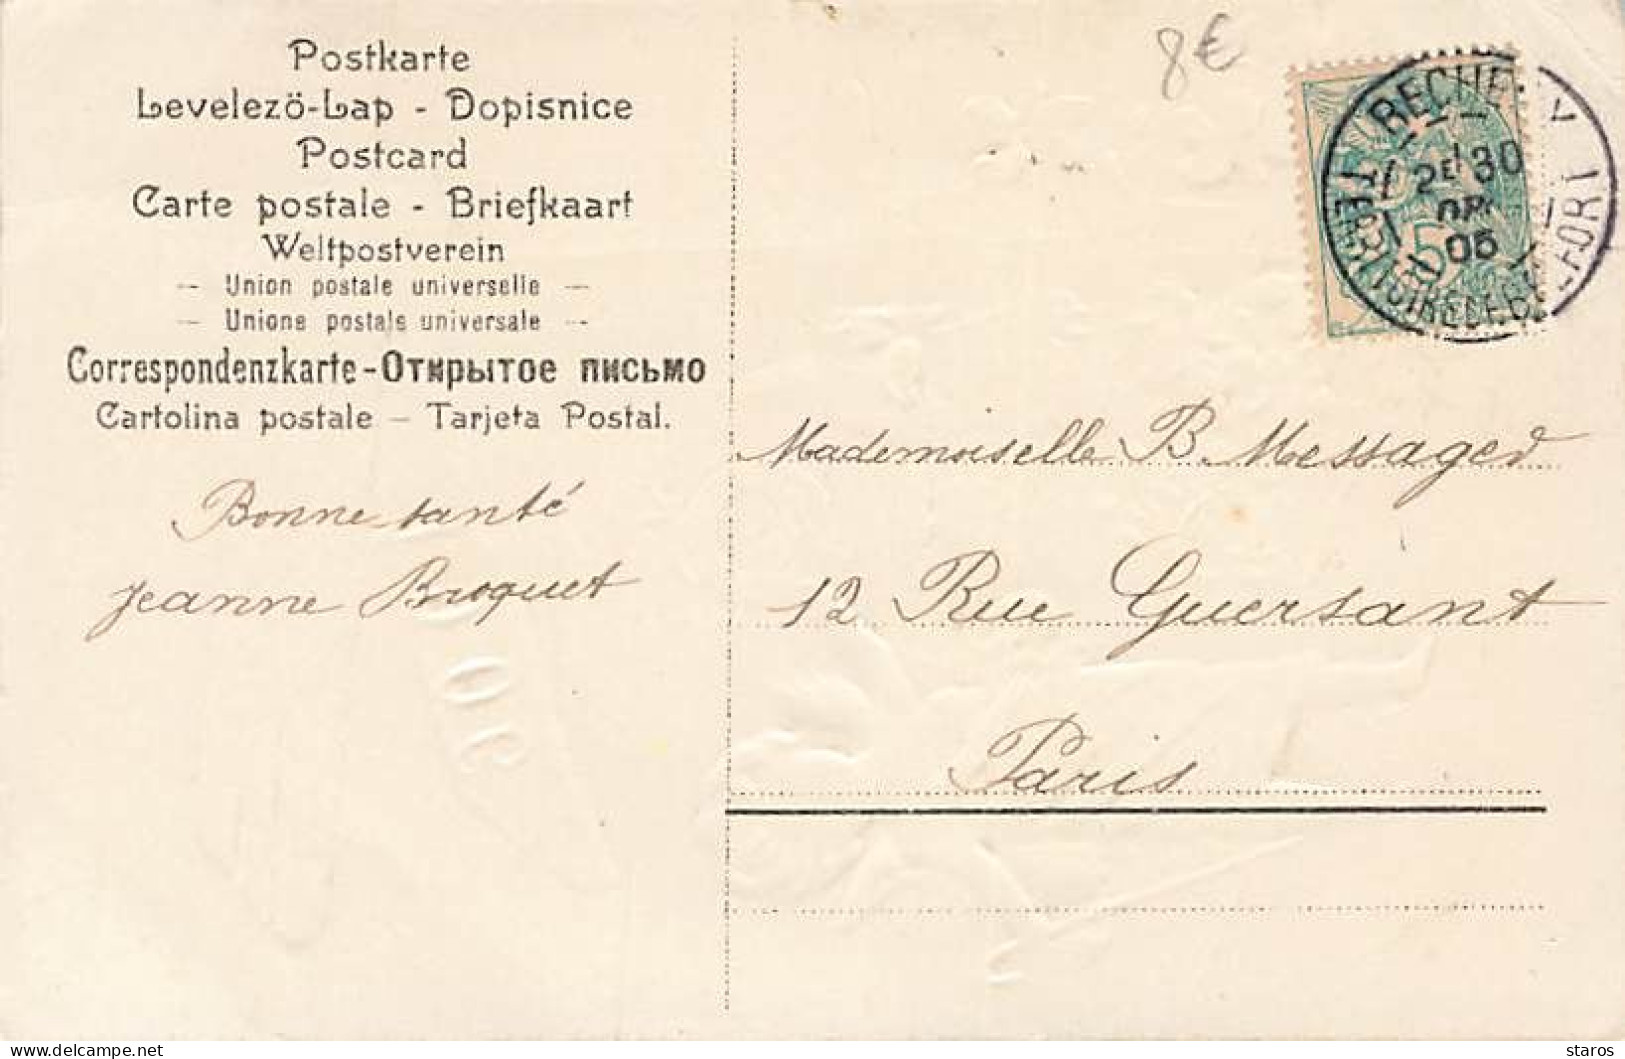 Carte Gaufrée - Bonne Année 1906 - Ange Près D'un Croisement D'année, Violettes - Nouvel An